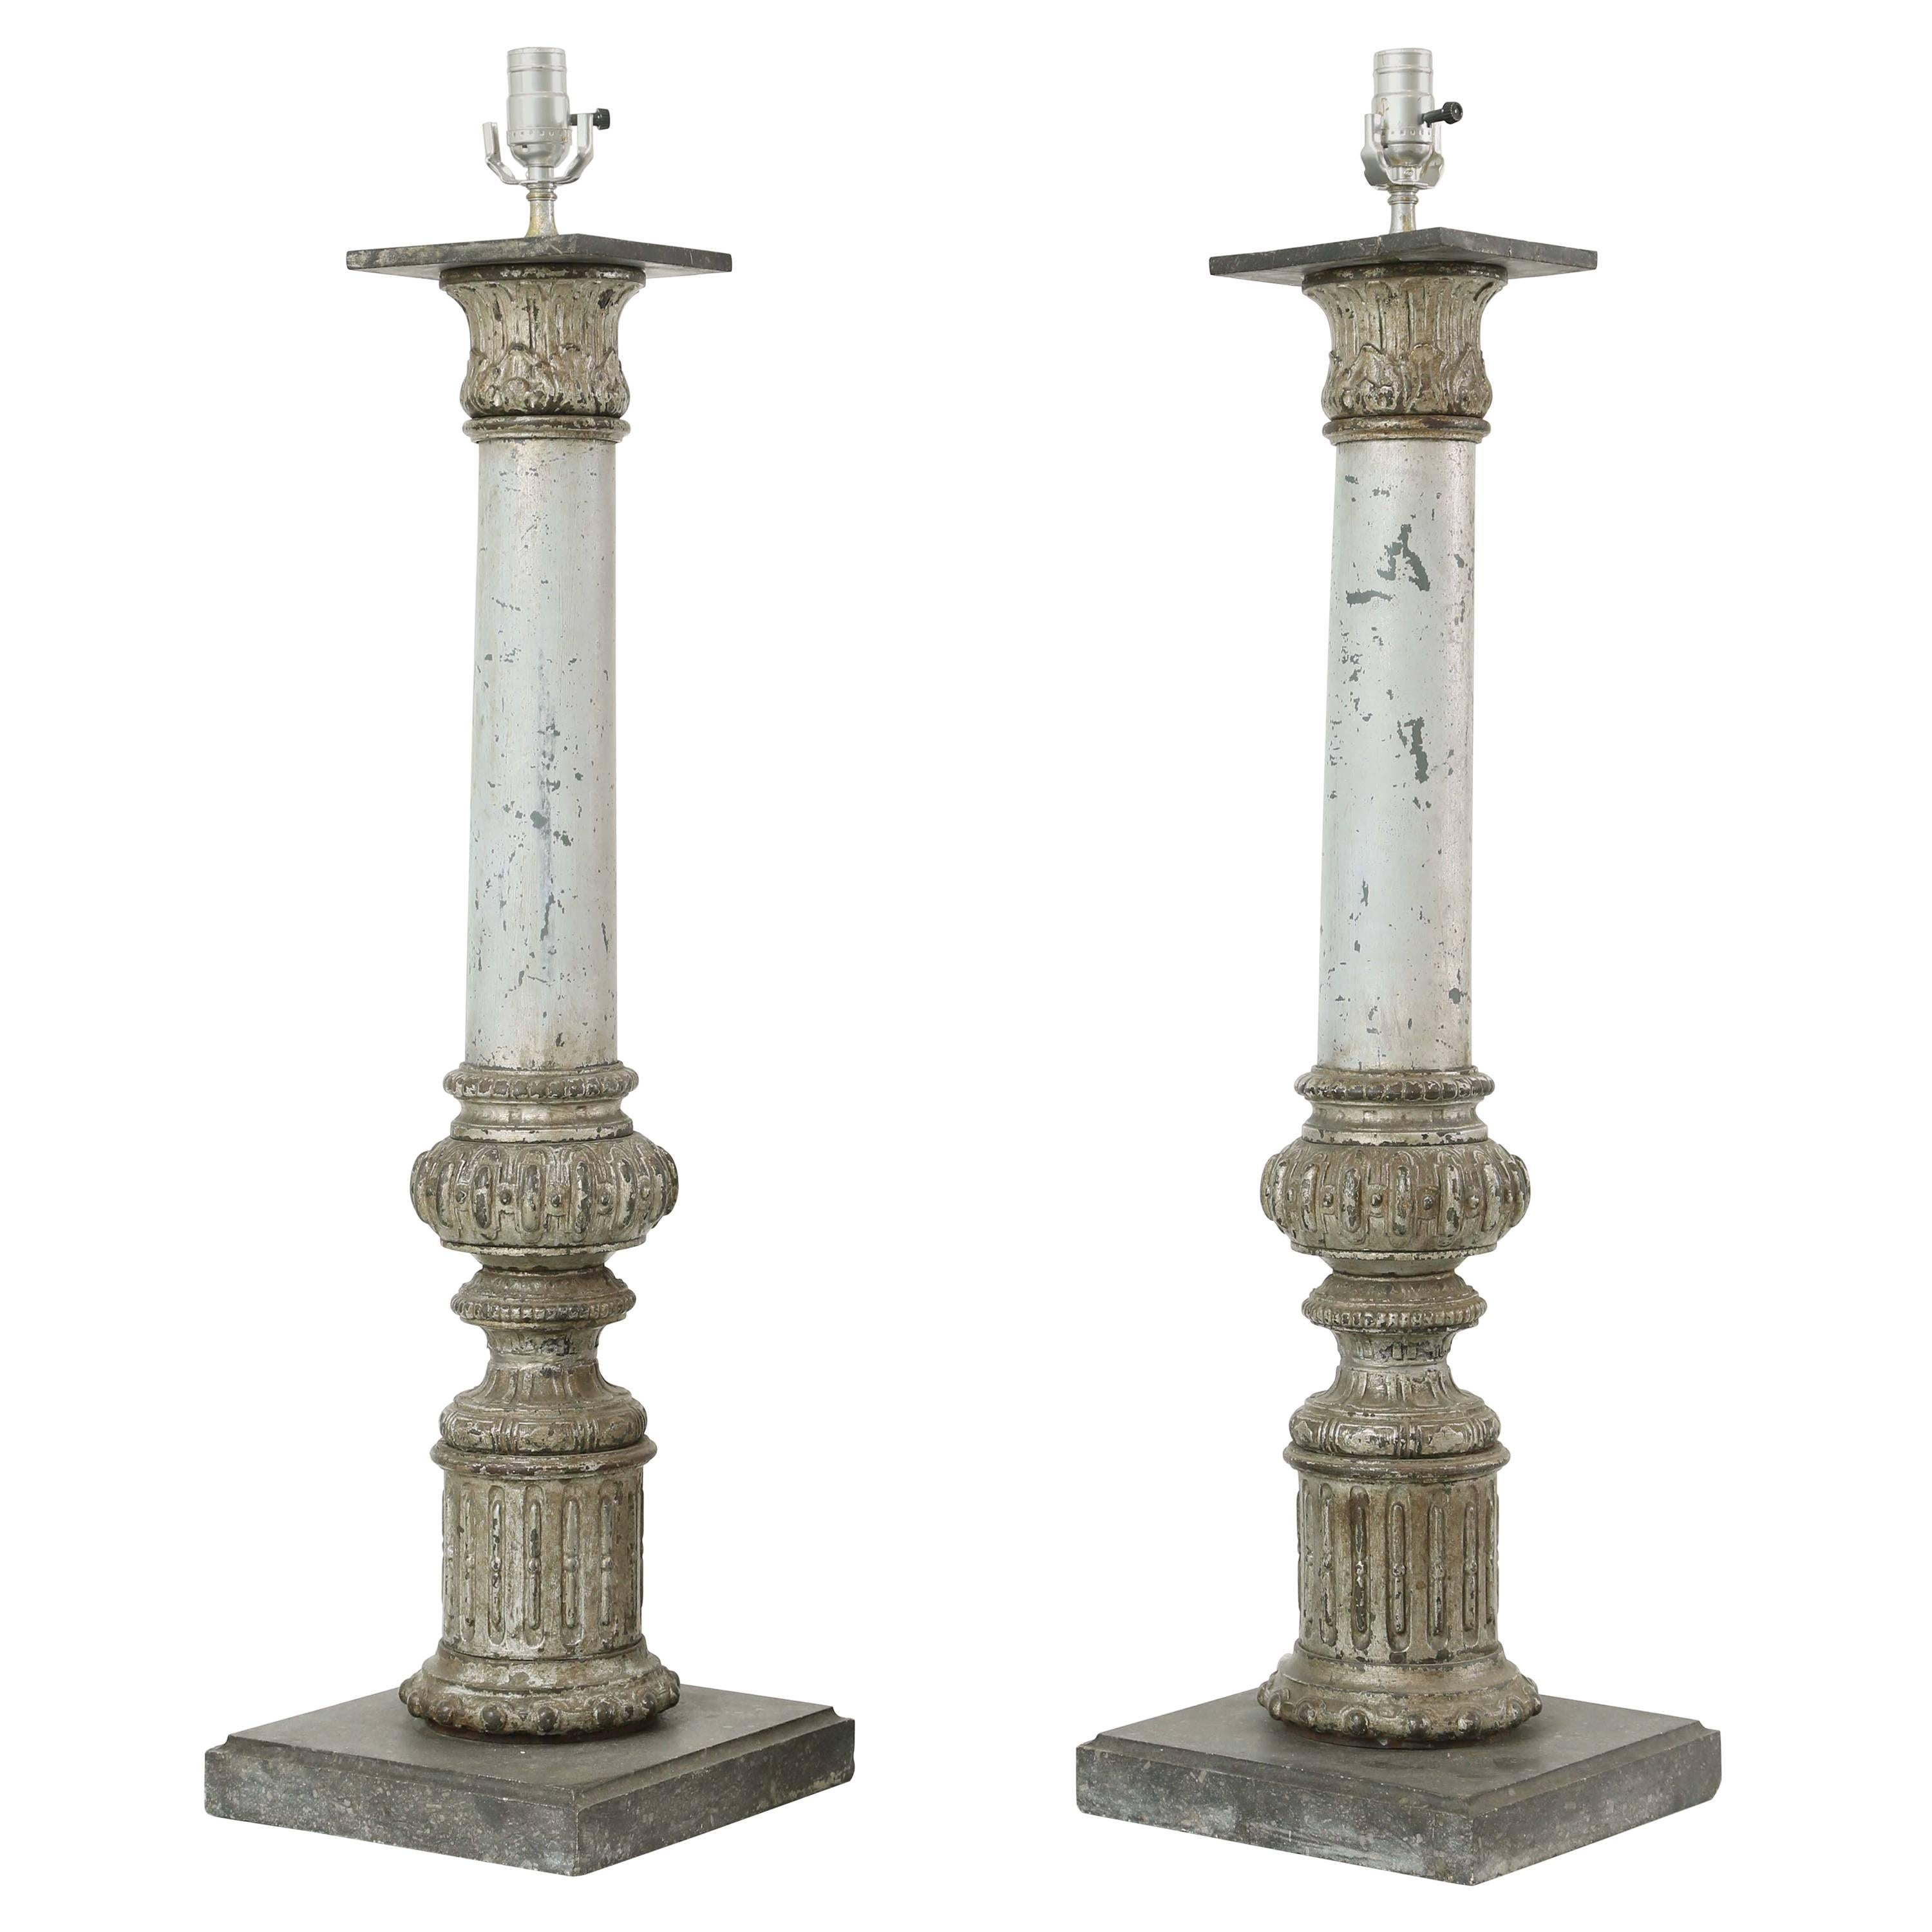 Zwei Tischlampen in Säulenform aus dem 19. Jahrhundert